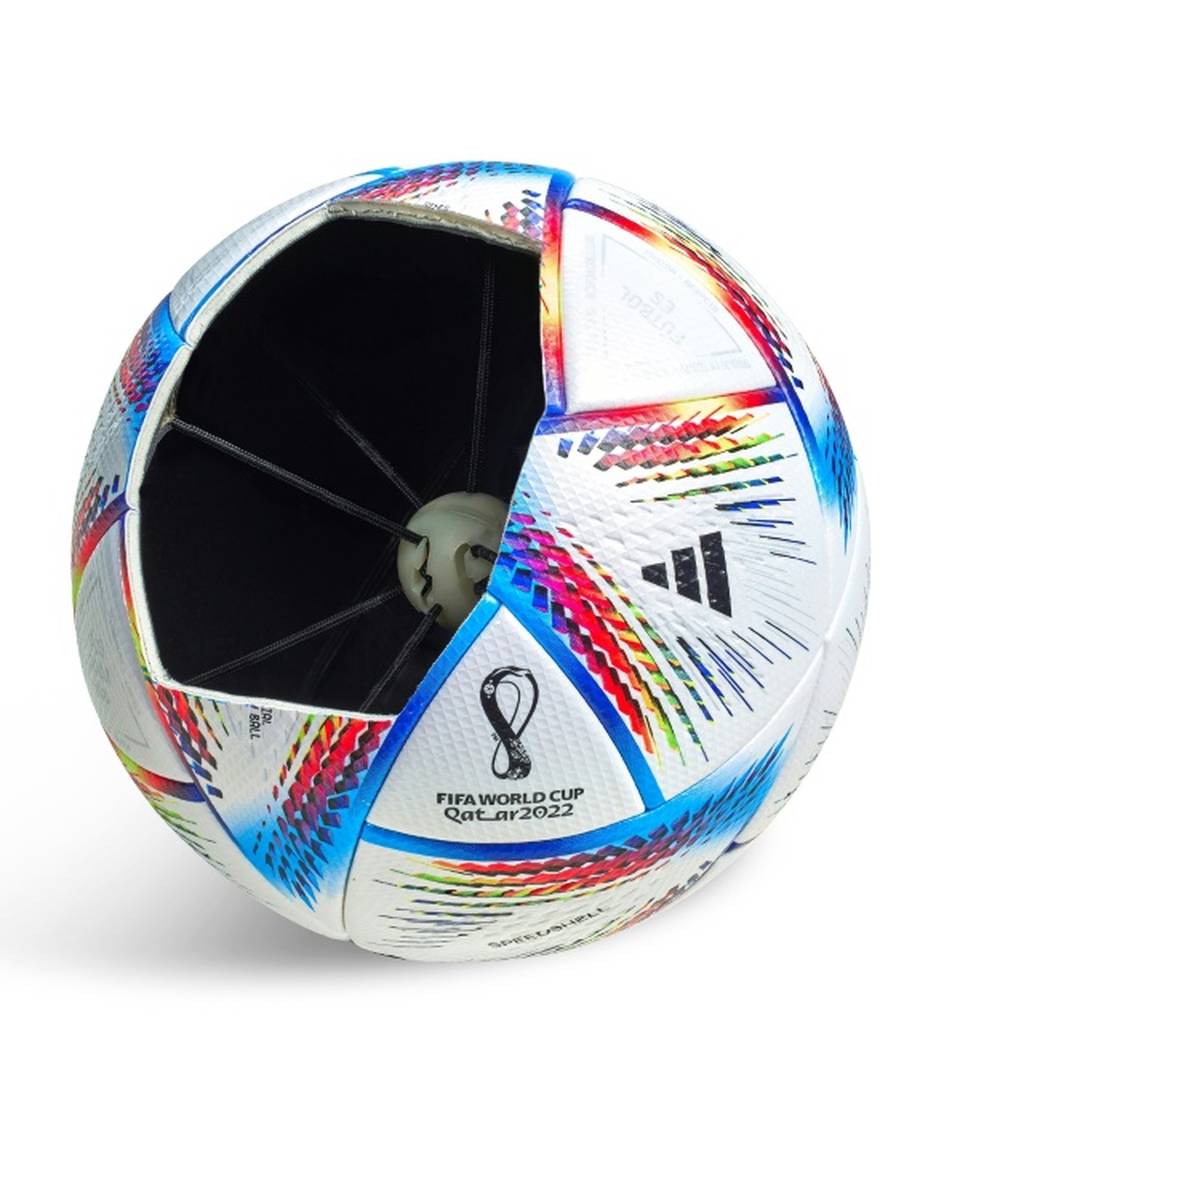 Der Spielball für die Fußball-Weltmeisterschaft in Katar wird erstmals mit einer vernetzten Balltechnologie ausgestattet sein.